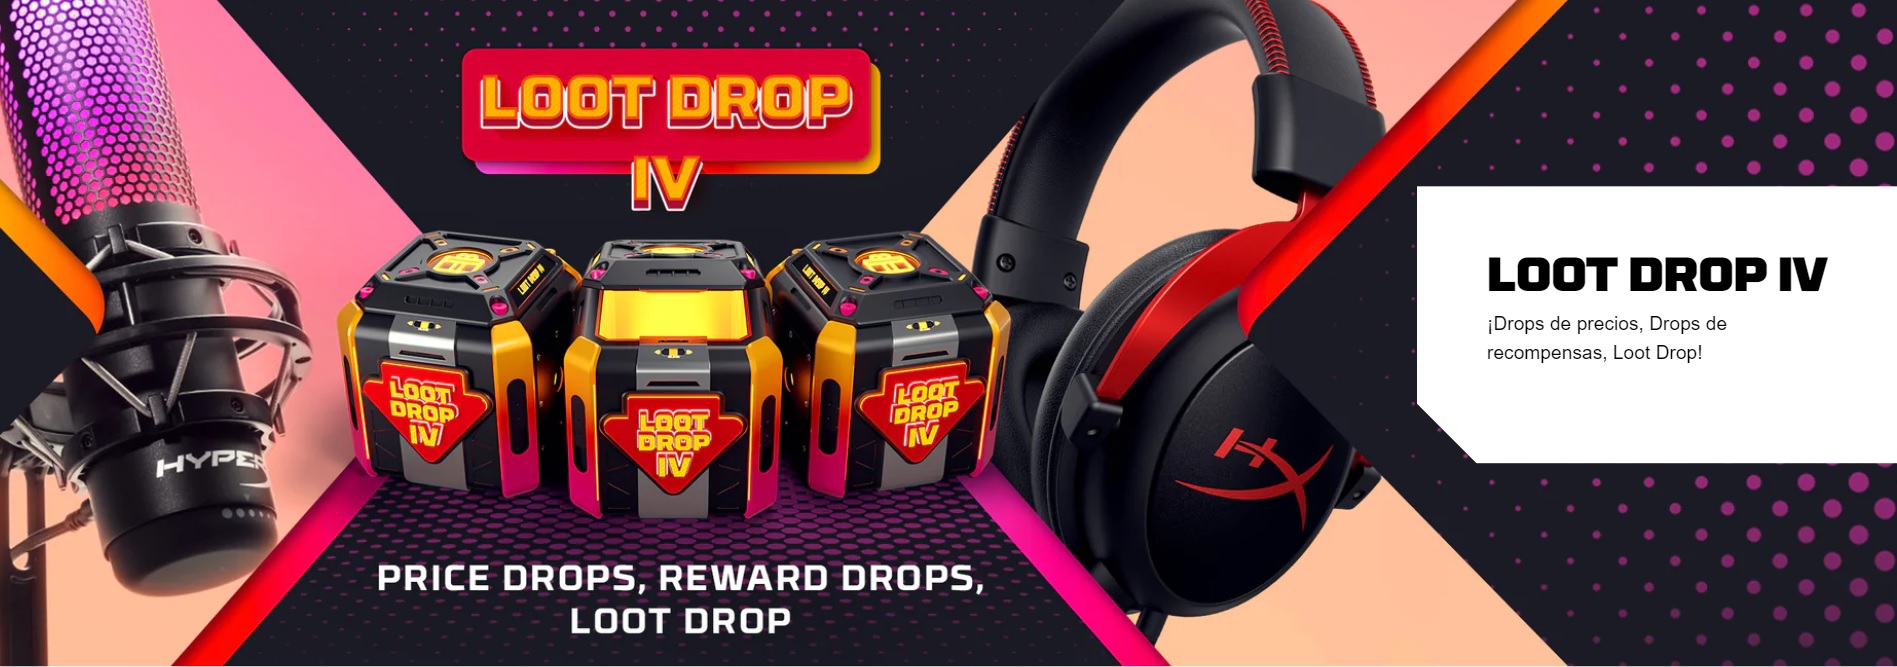 HyperX anunció la campaña Loot Drop IV